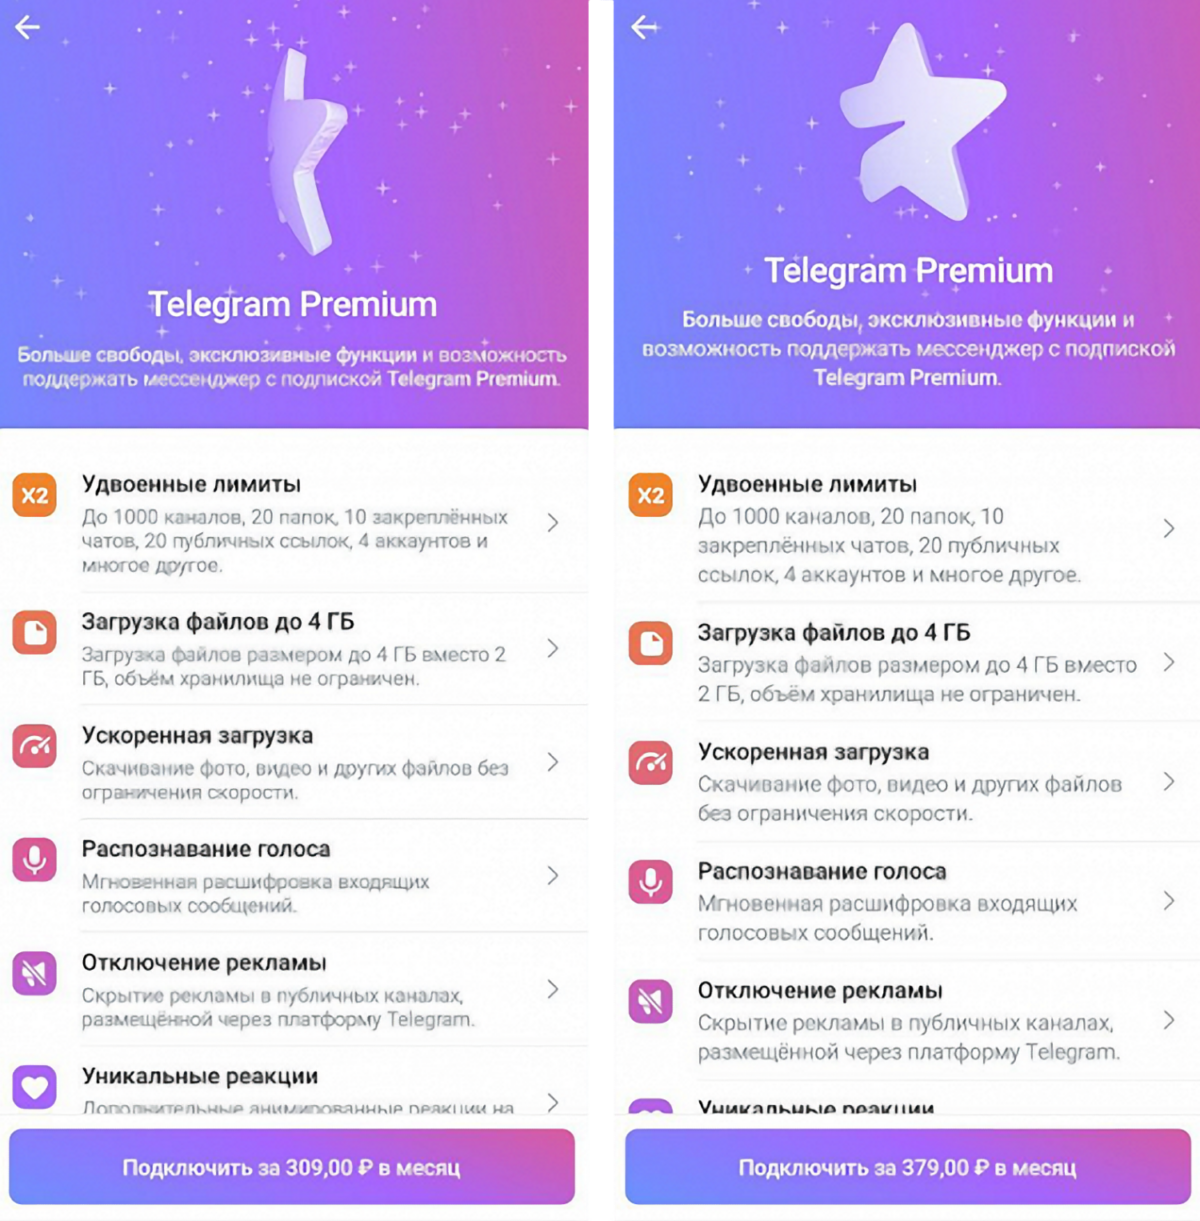 Как оформить подписку Telegram Premium за 300 рублей вместо 450